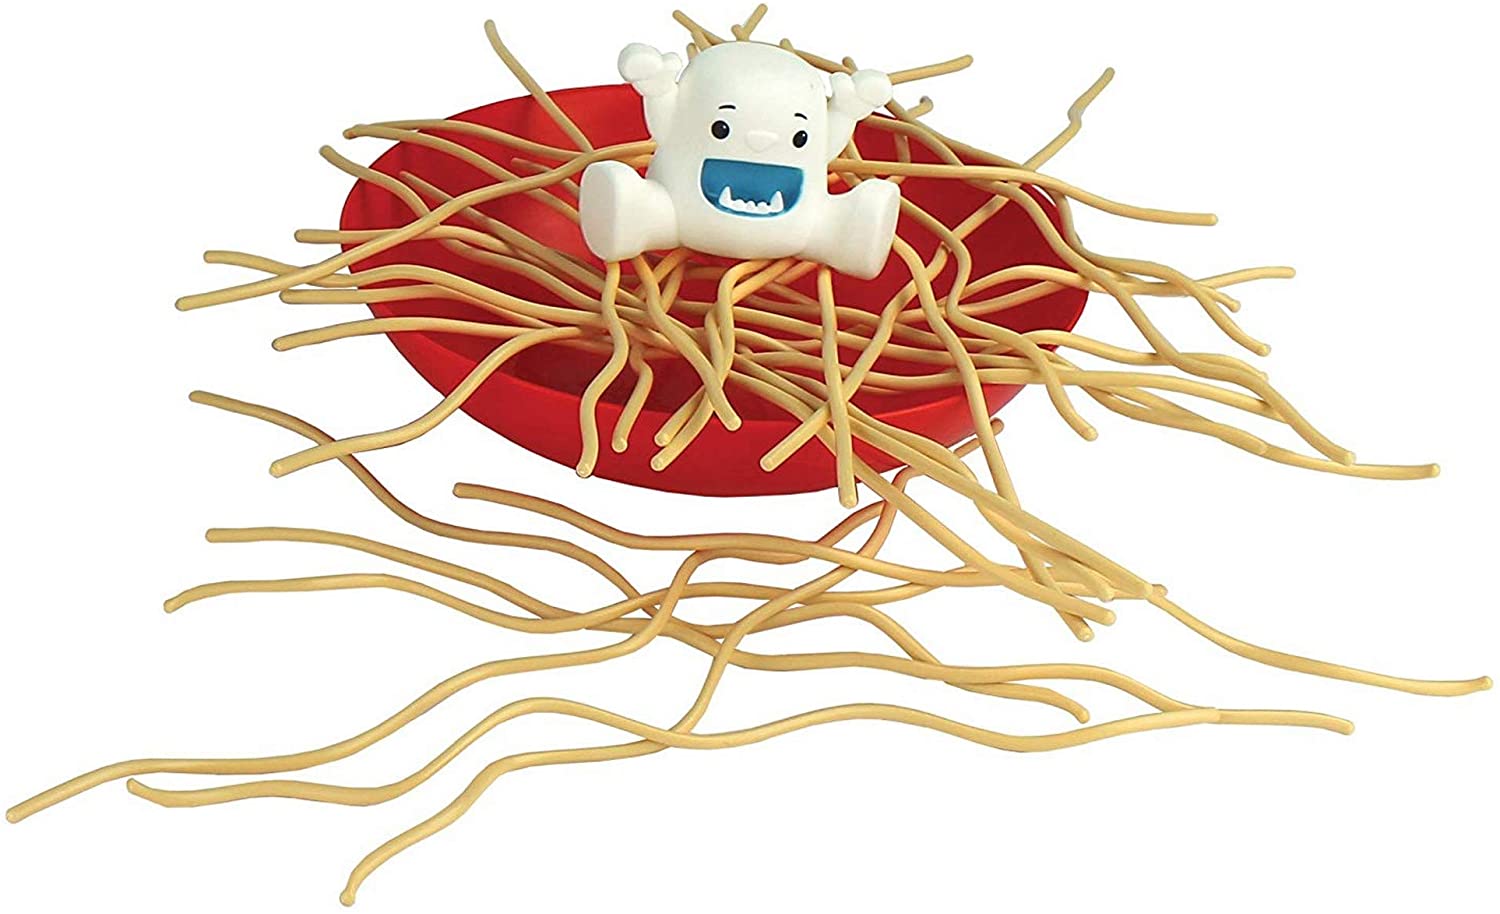 Yeti In My Spaghetti Game